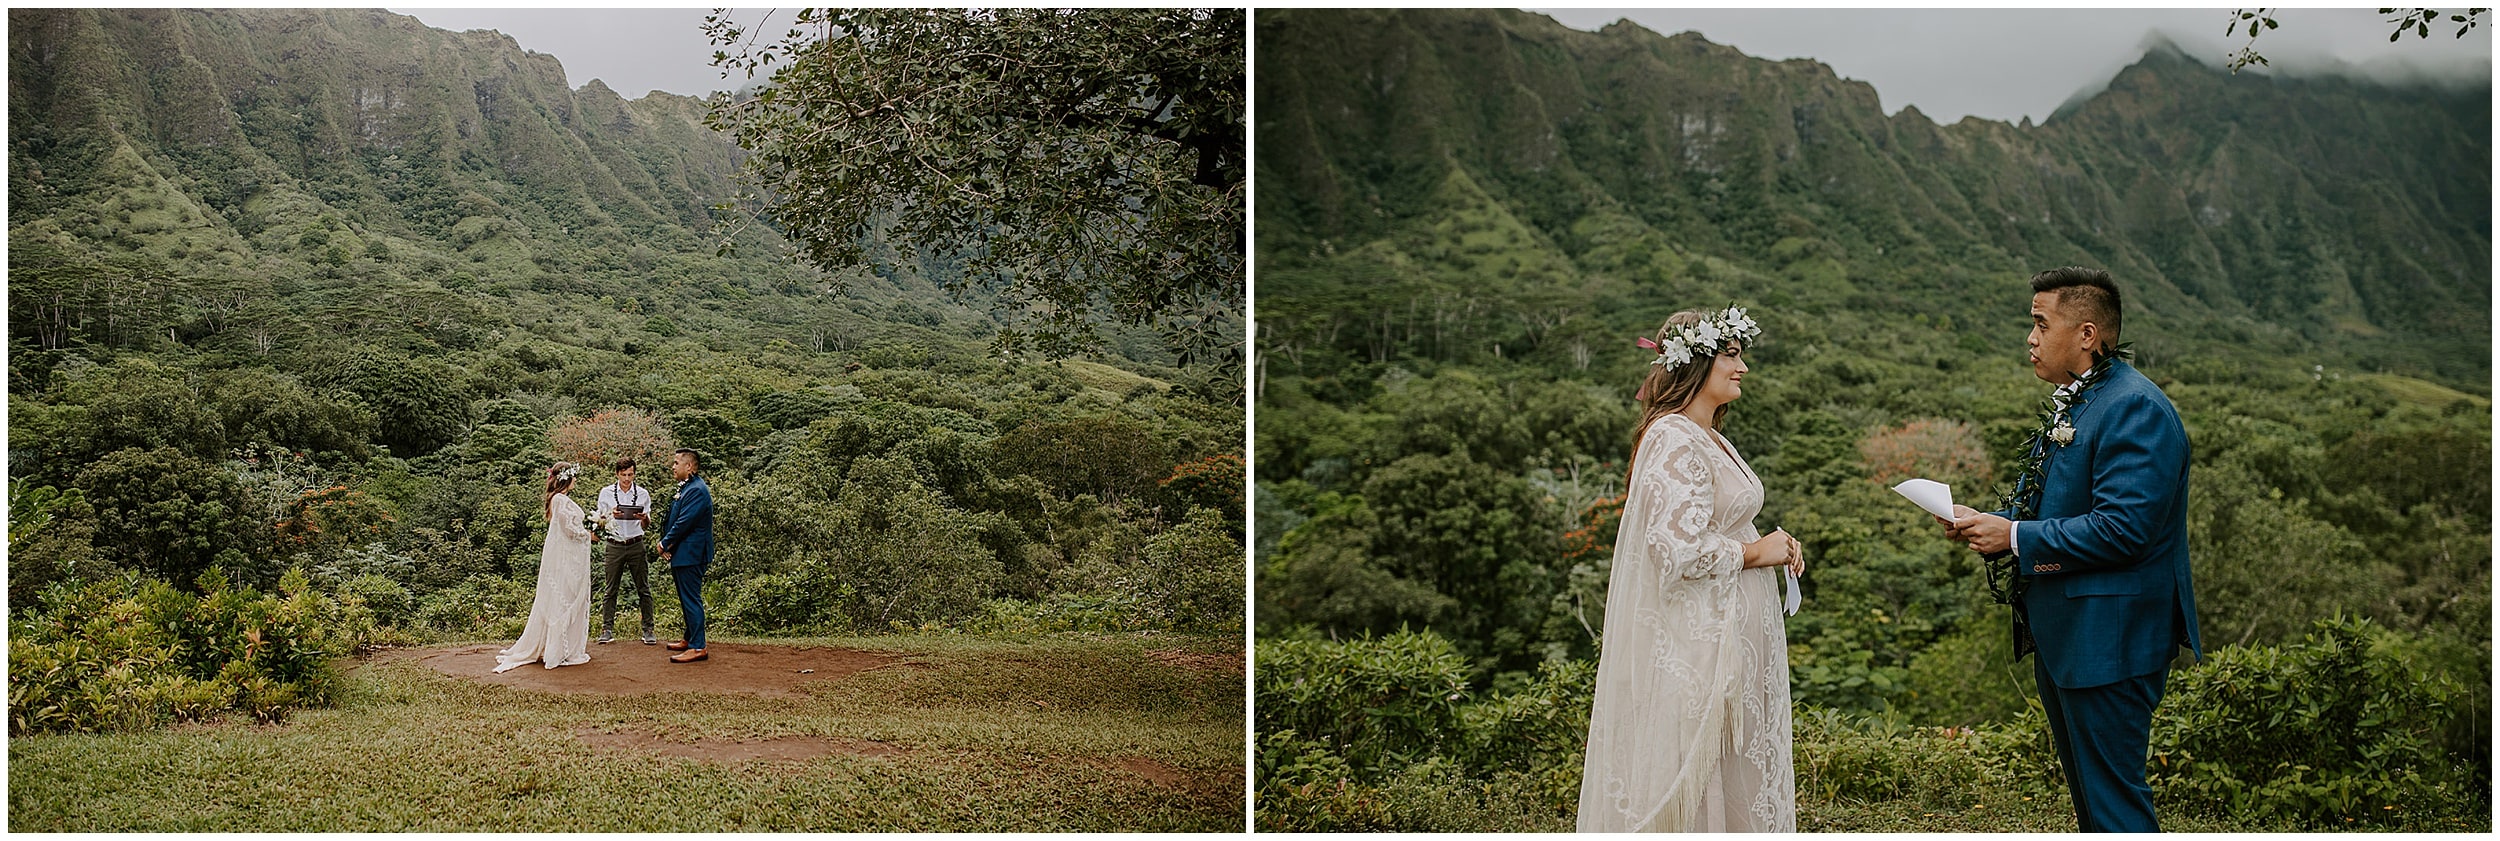 bride and groom eloping in hawaii